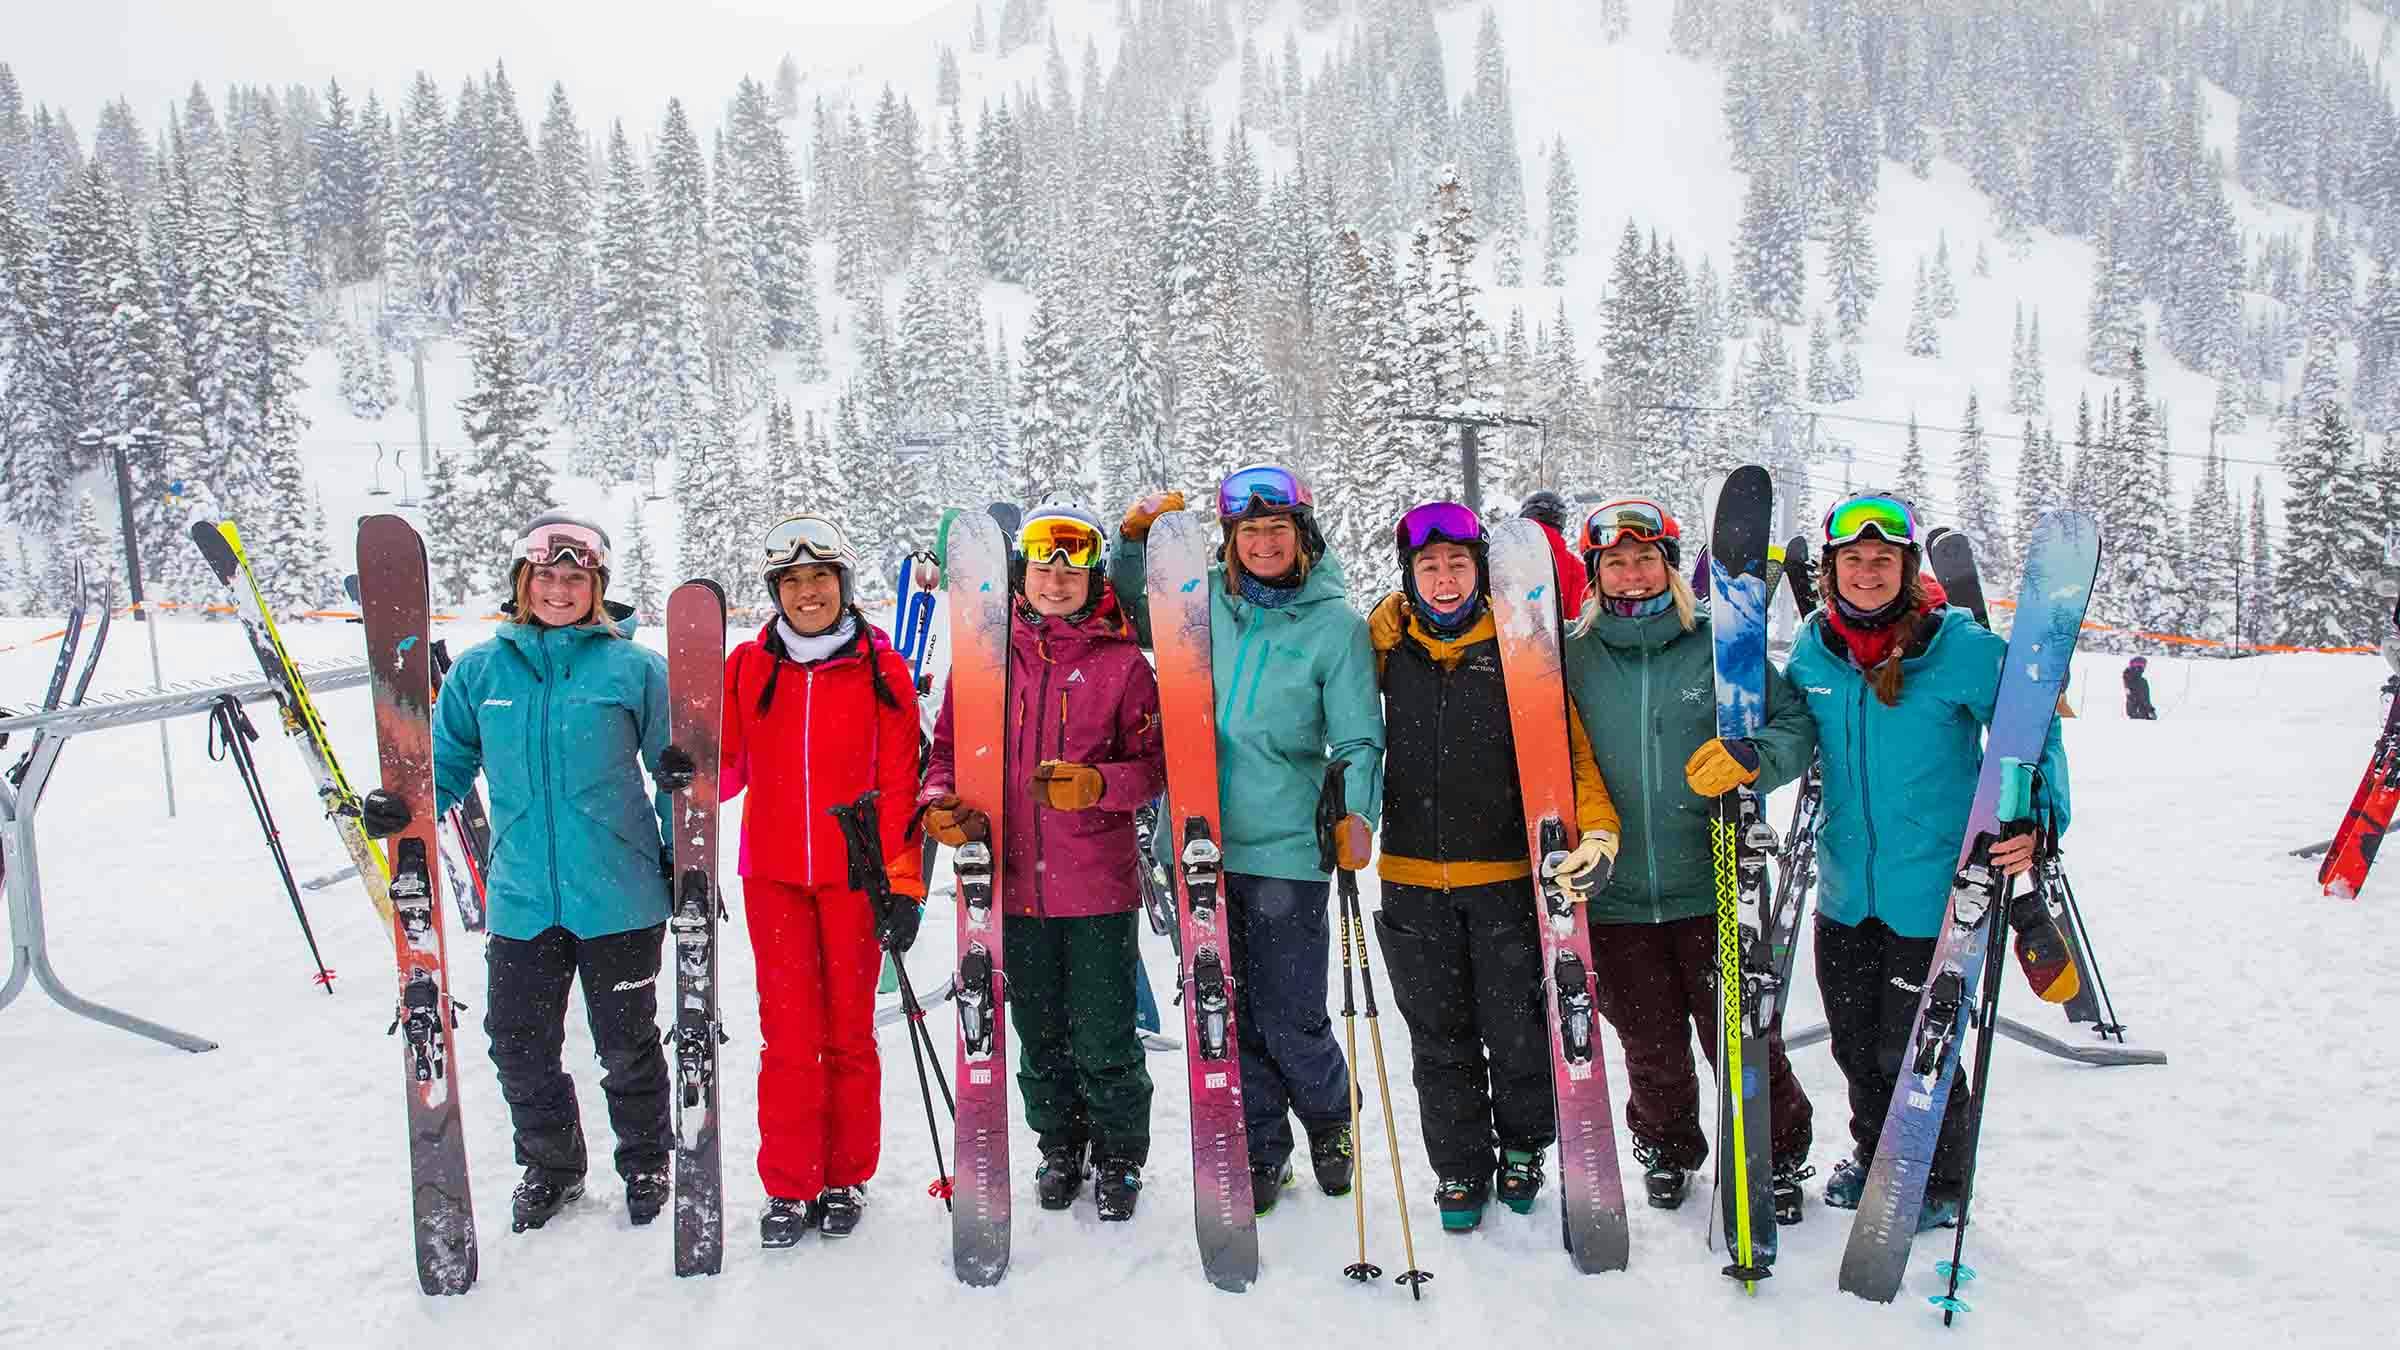 The Nordica Women's Ski Team